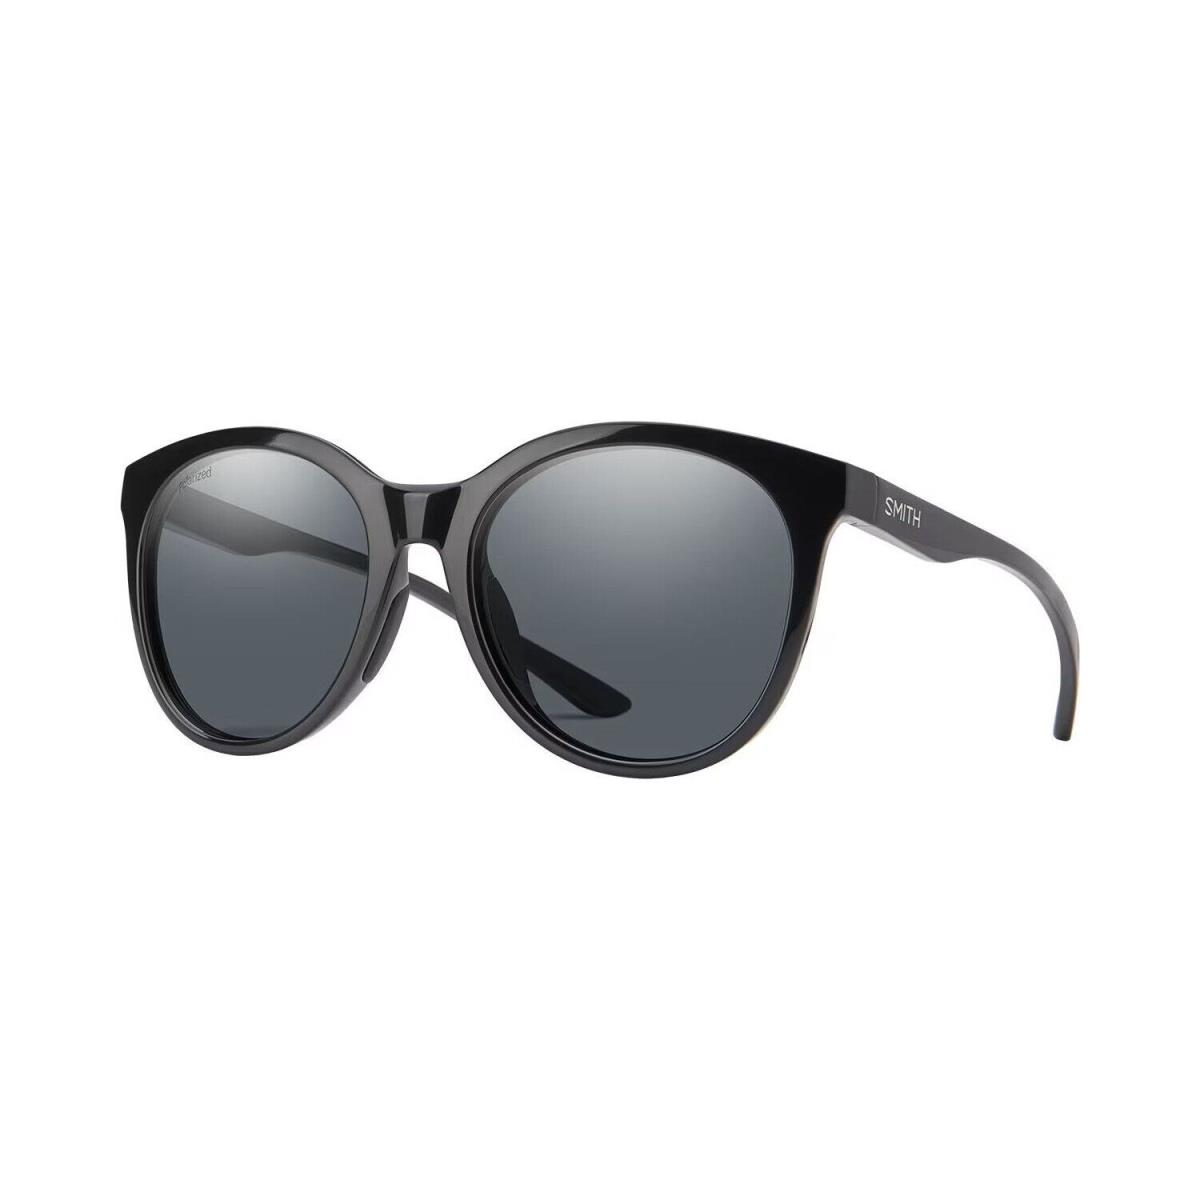 Smith Optics Bayside Polarized Sunglasses